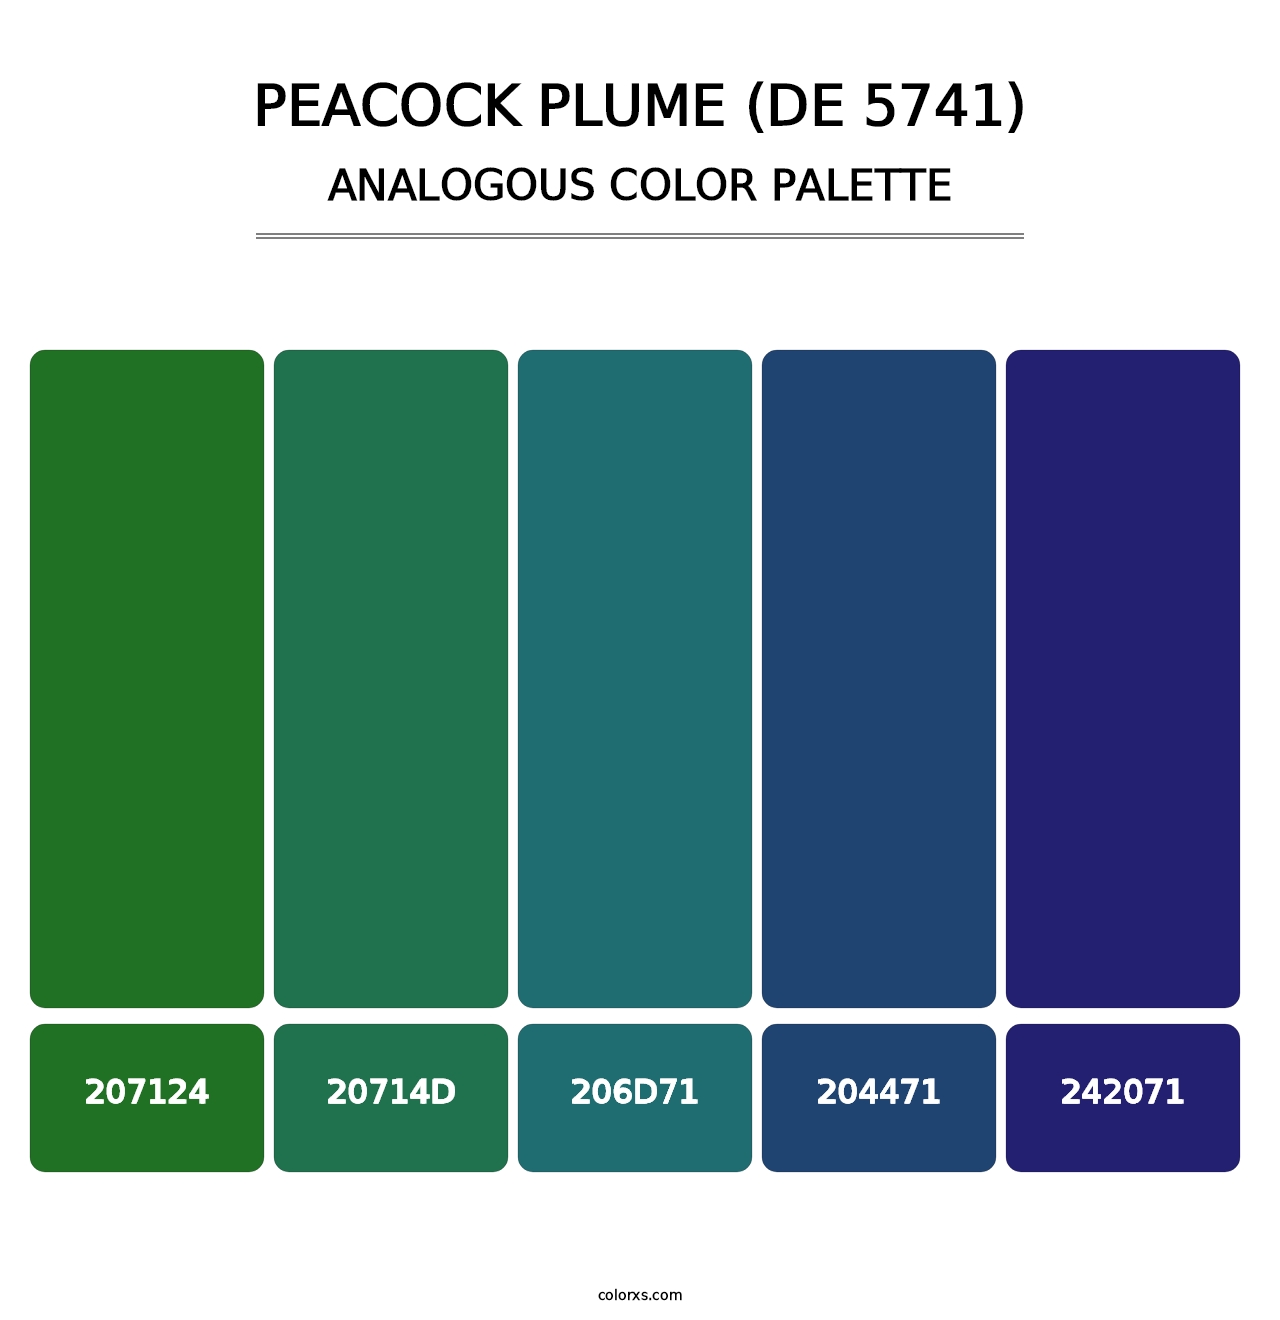 Peacock Plume (DE 5741) - Analogous Color Palette